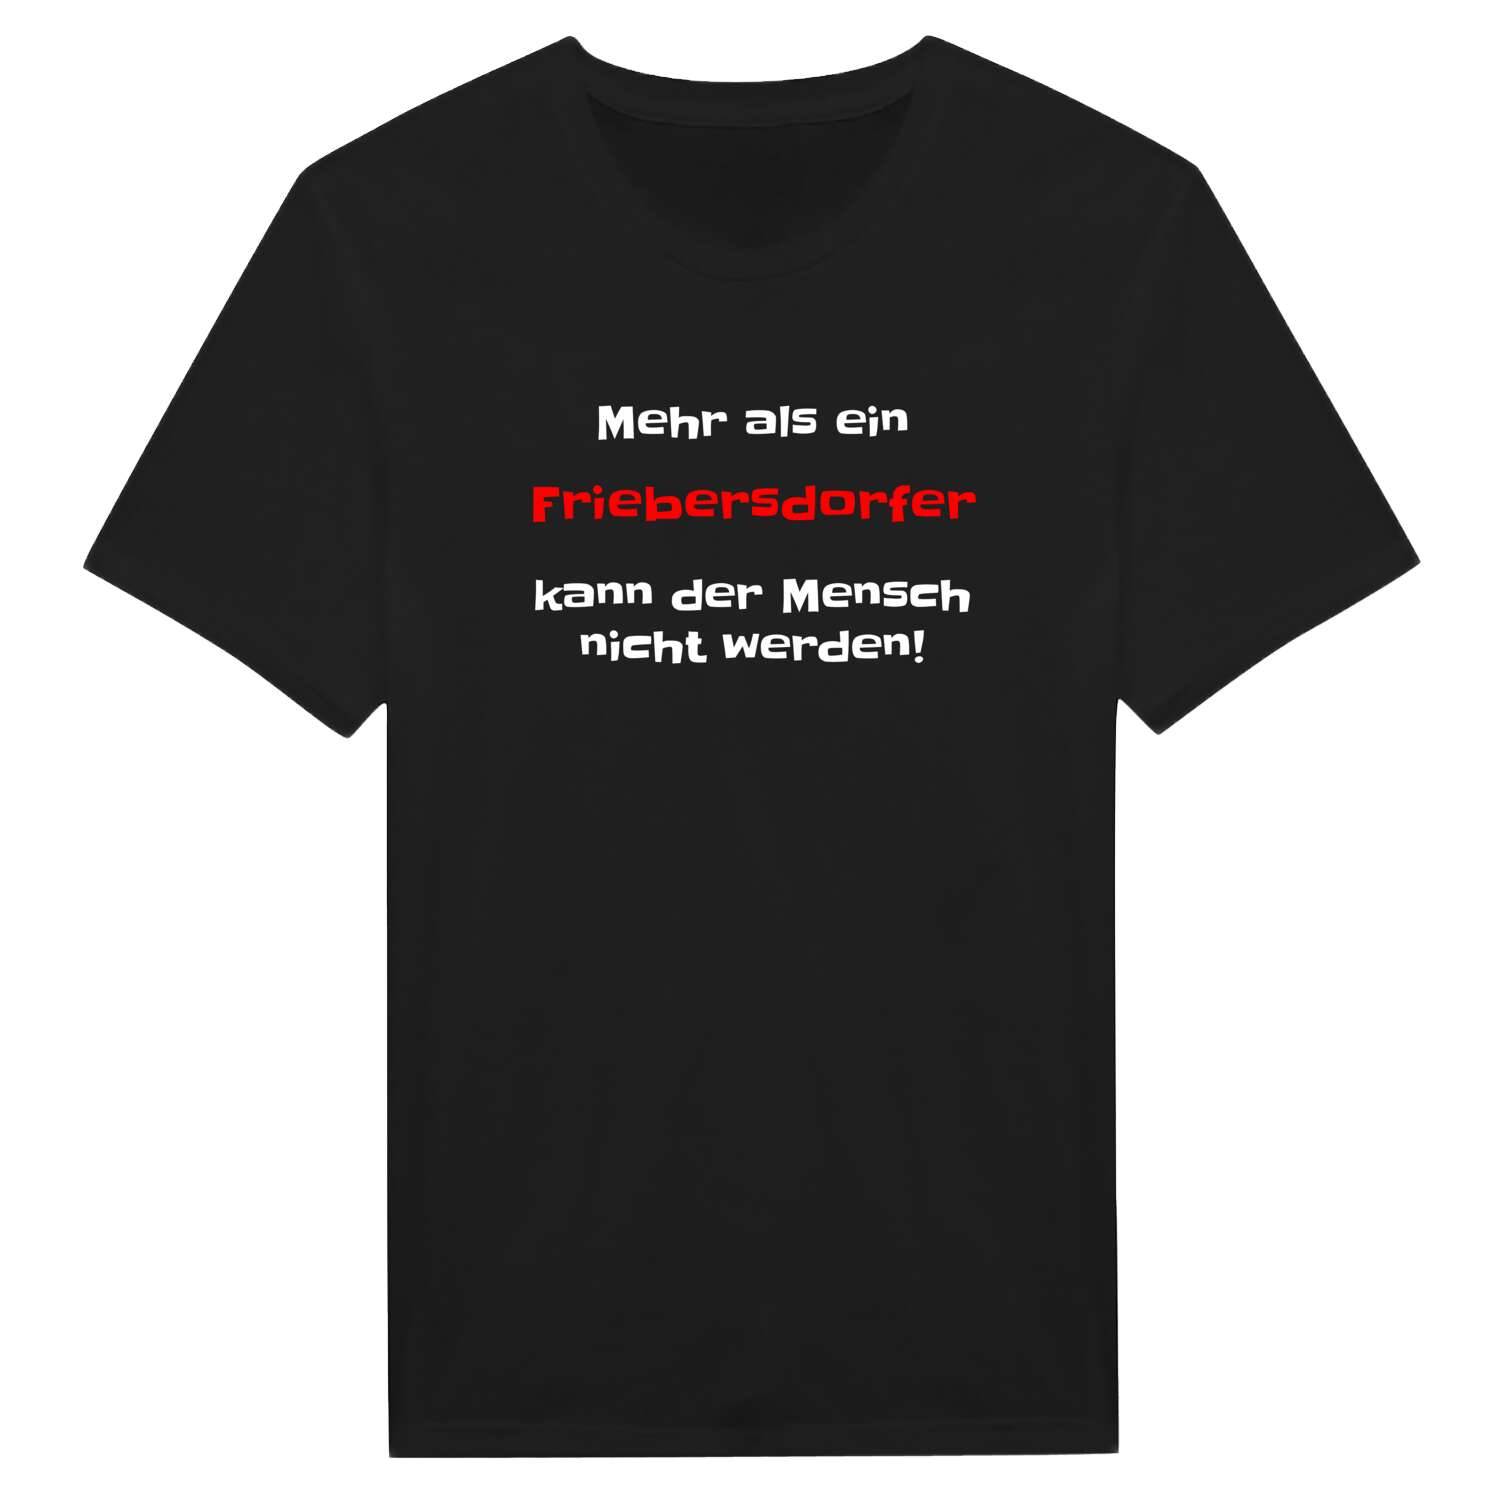 Friebersdorf T-Shirt »Mehr als ein«